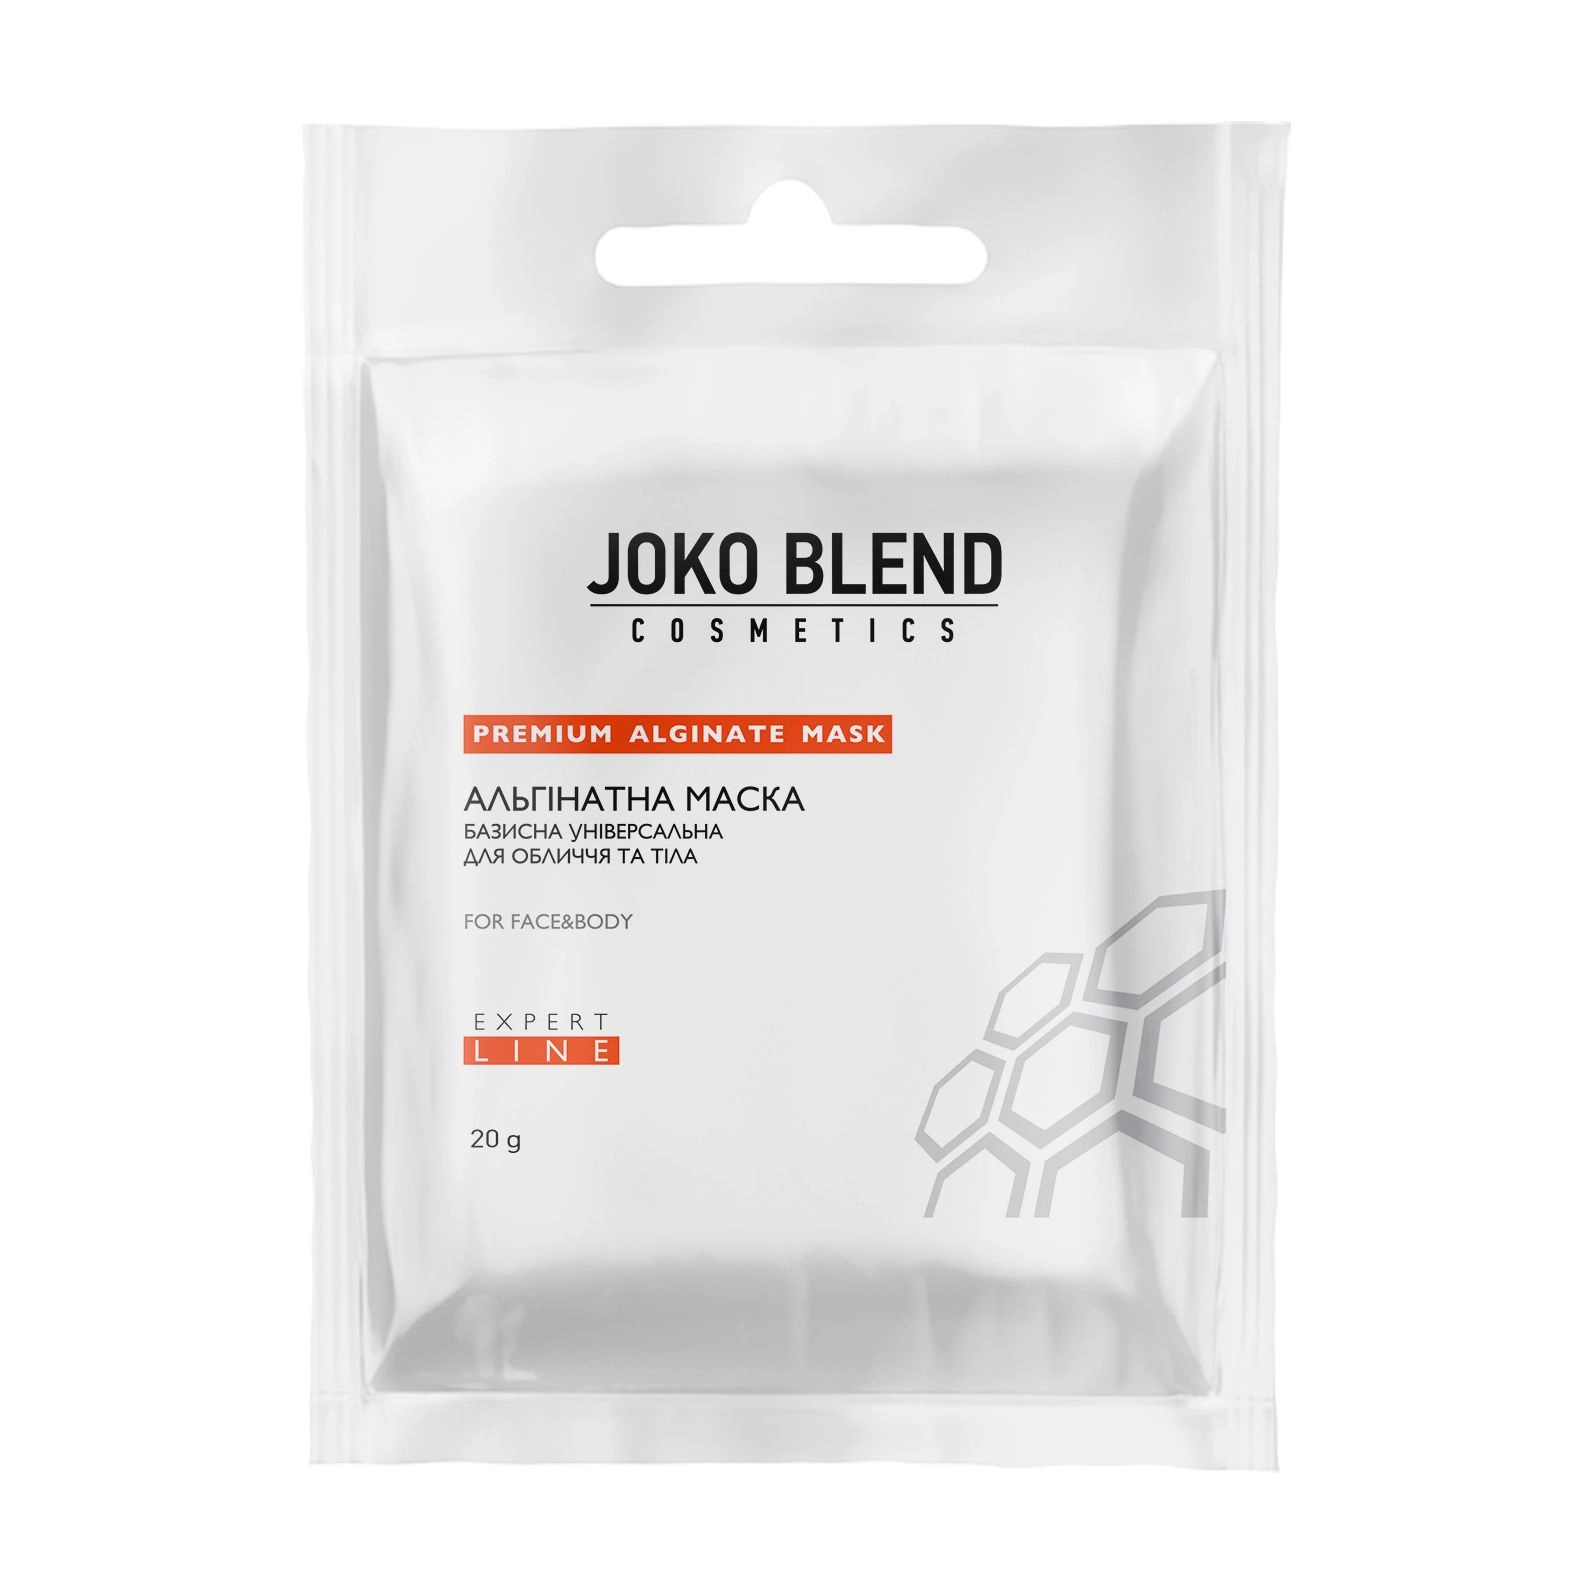 Joko Blend Альгинатная маска базисная универсальная для лица и тела, 20 г - фото N1